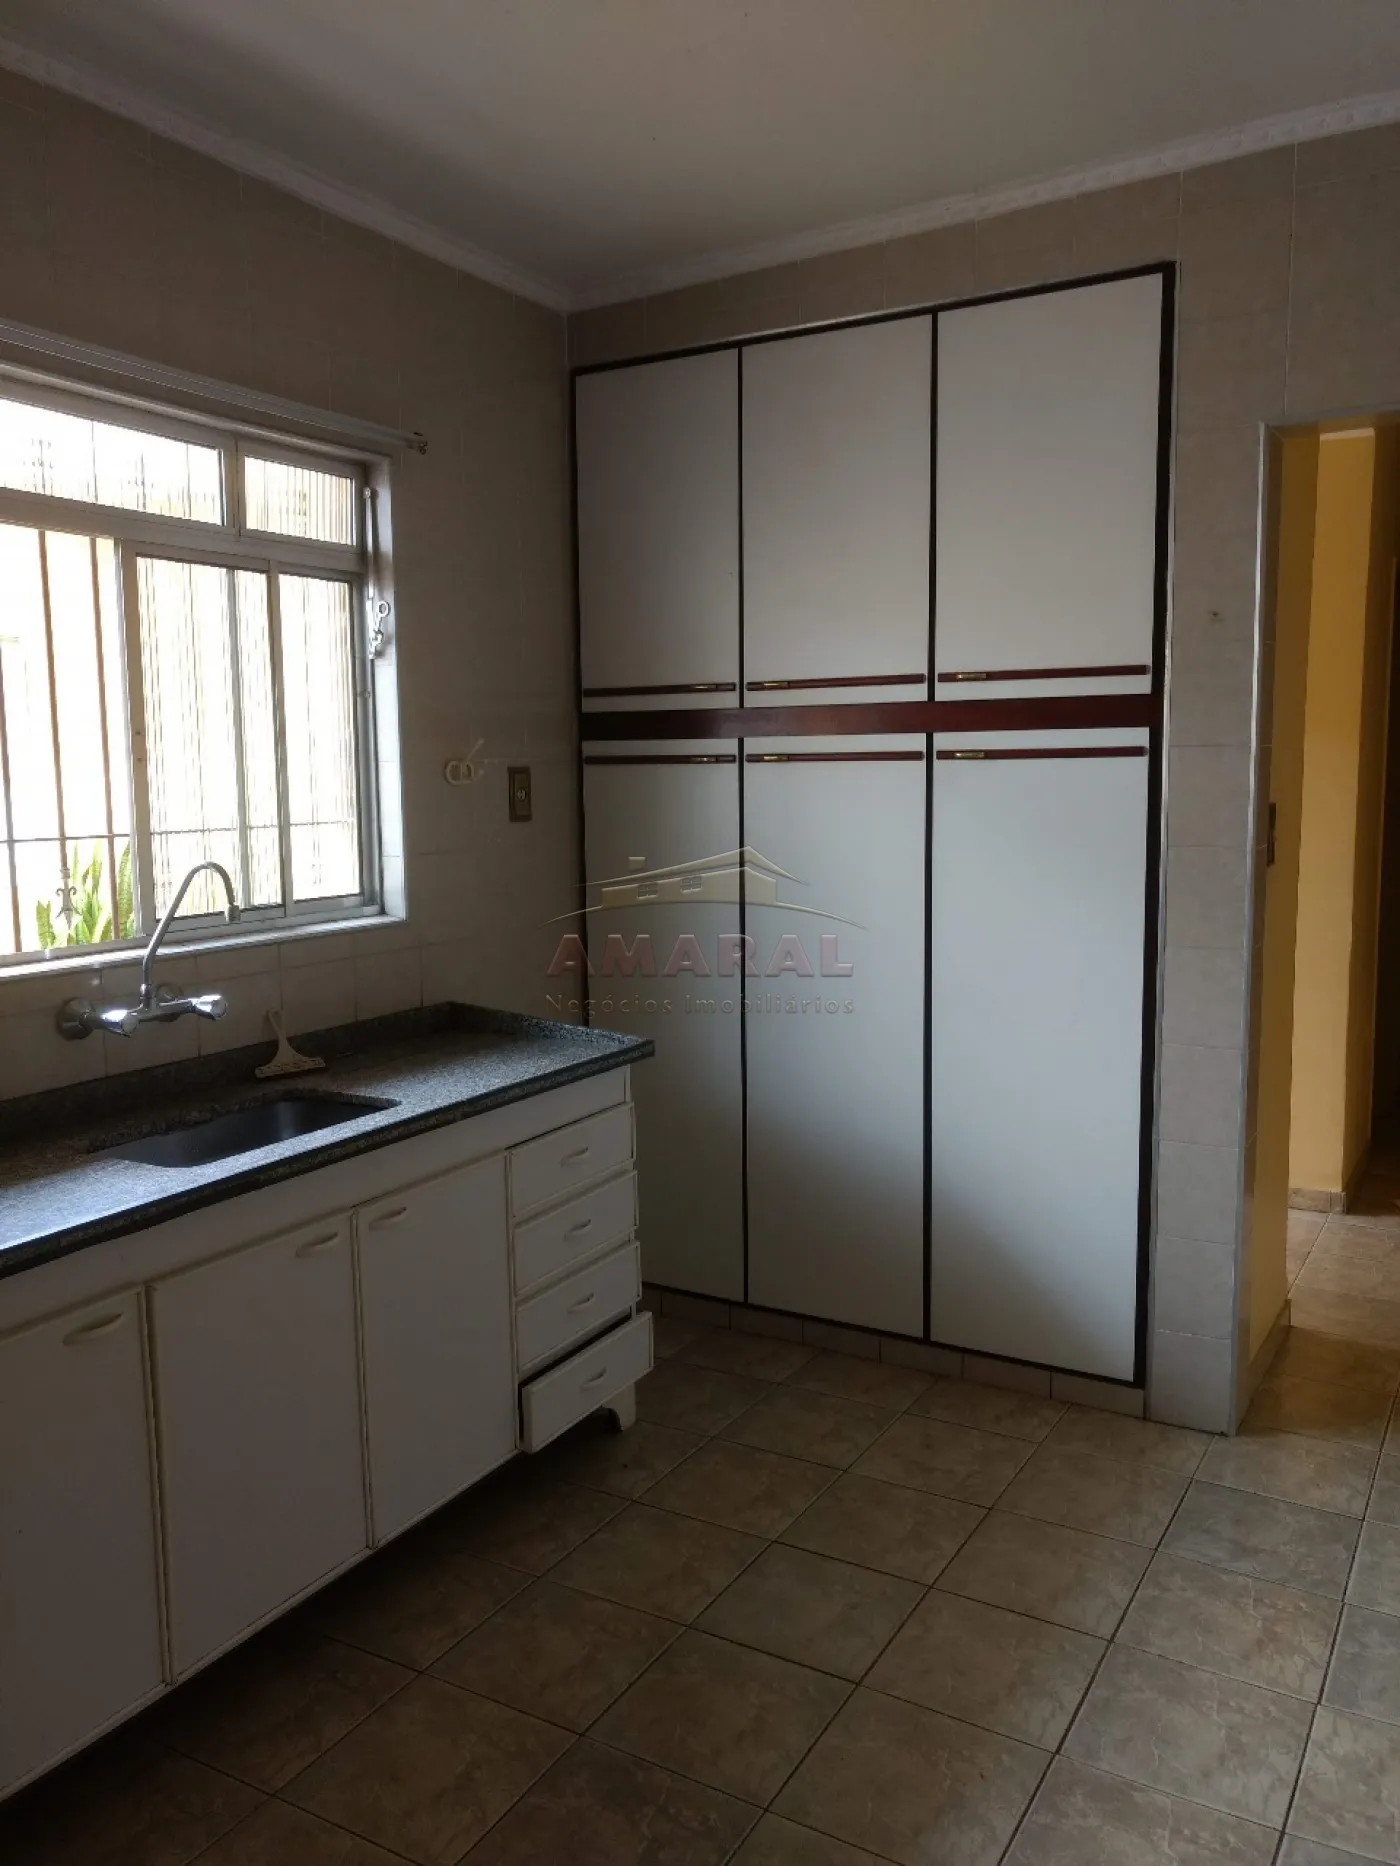 Comprar Casas / Térrea em Poá R$ 770.000,00 - Foto 21